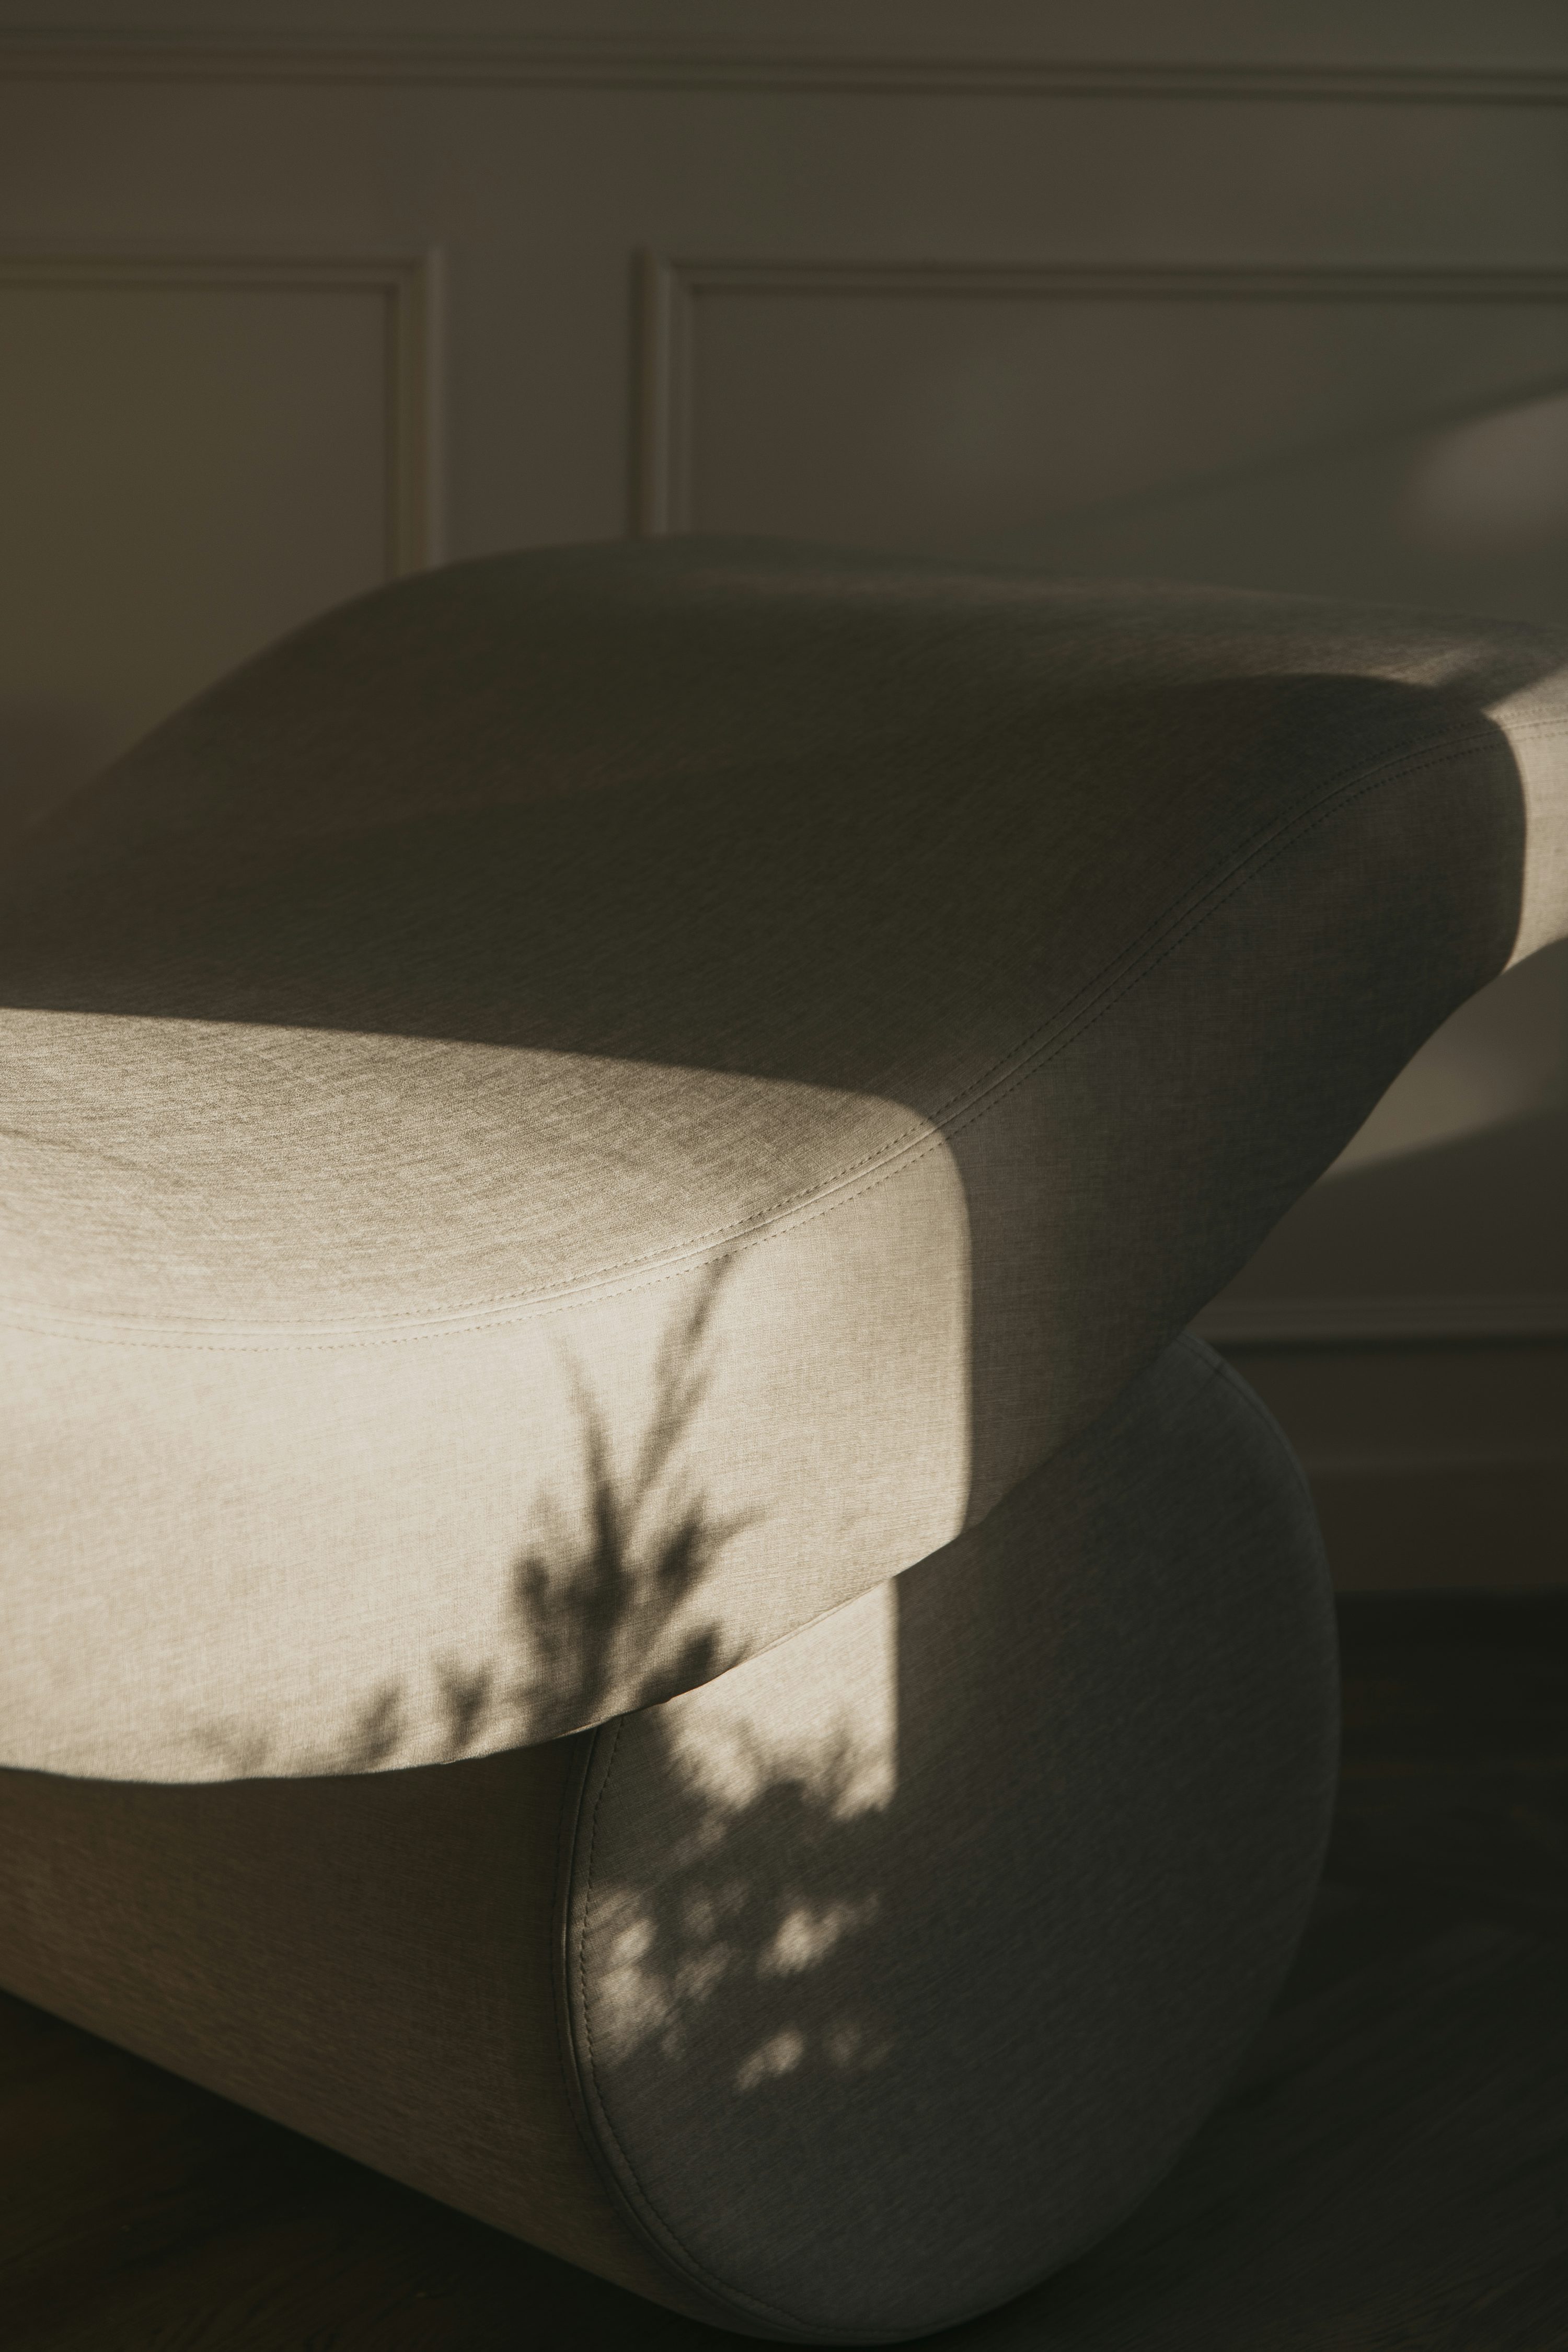 l’ombre d’une plante sur le dossier d’une chaise